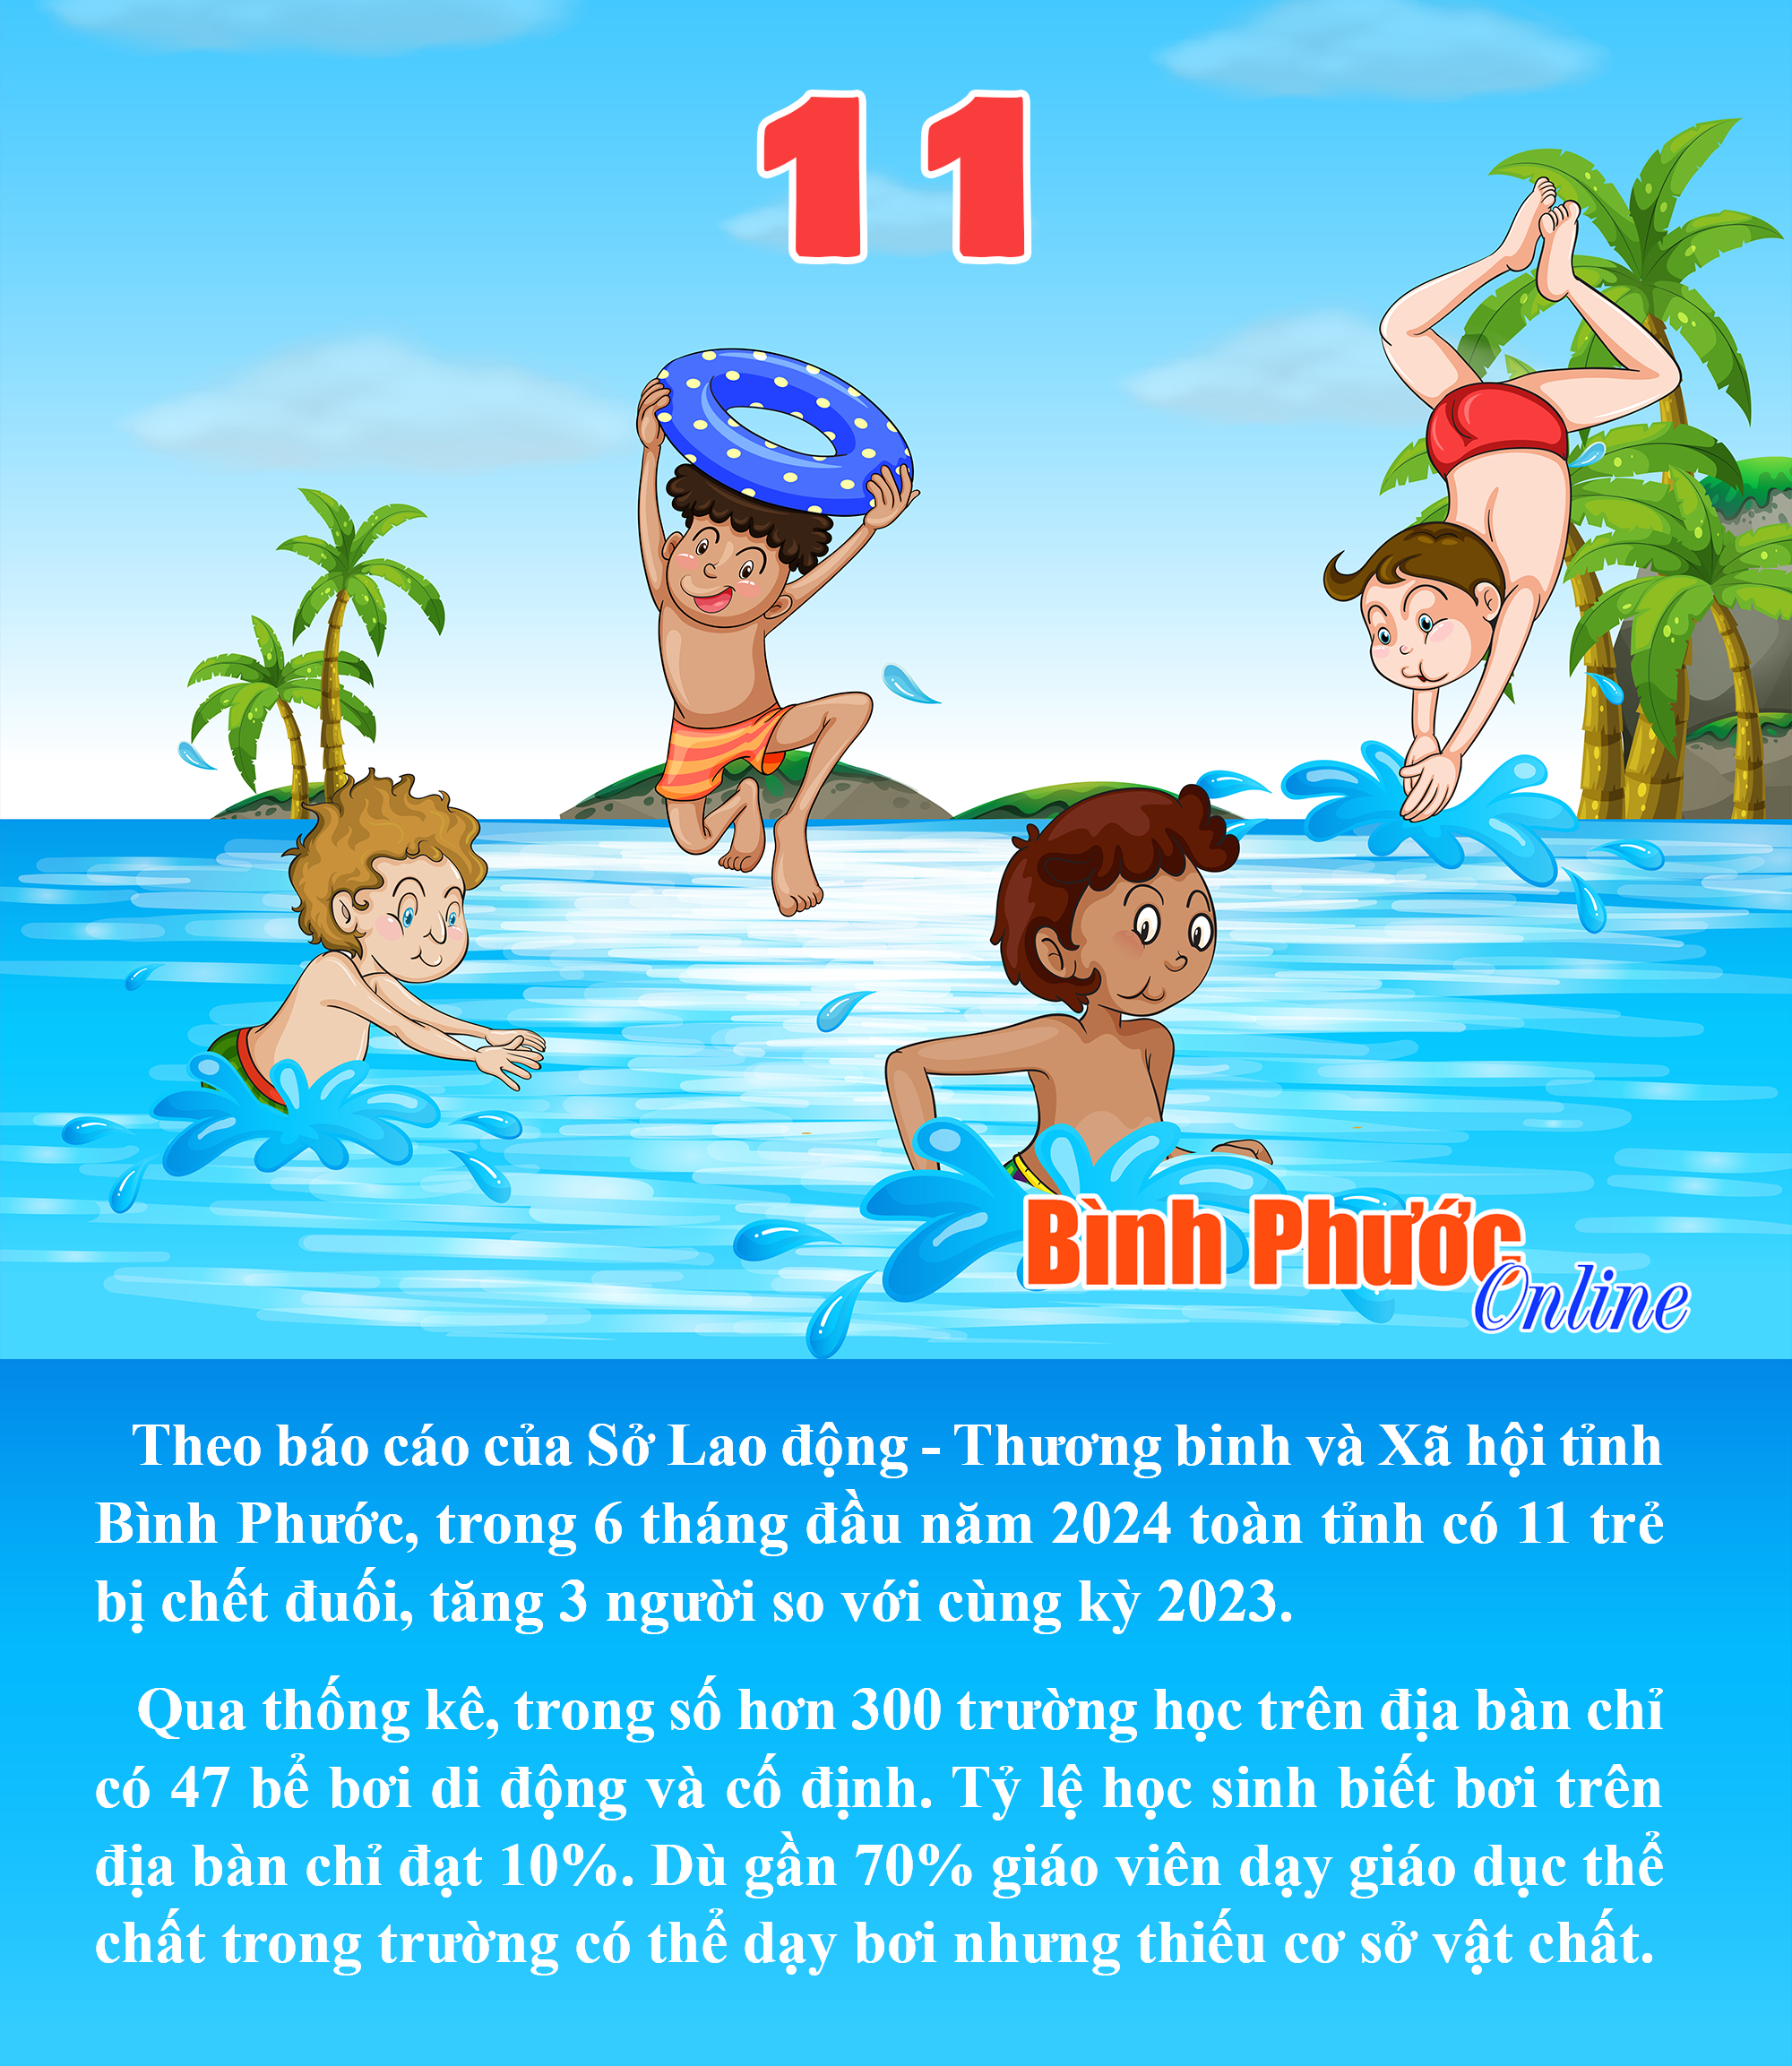 6 tháng đầu năm 2024, Bình Phước có 11 trẻ đuối nước tử vong